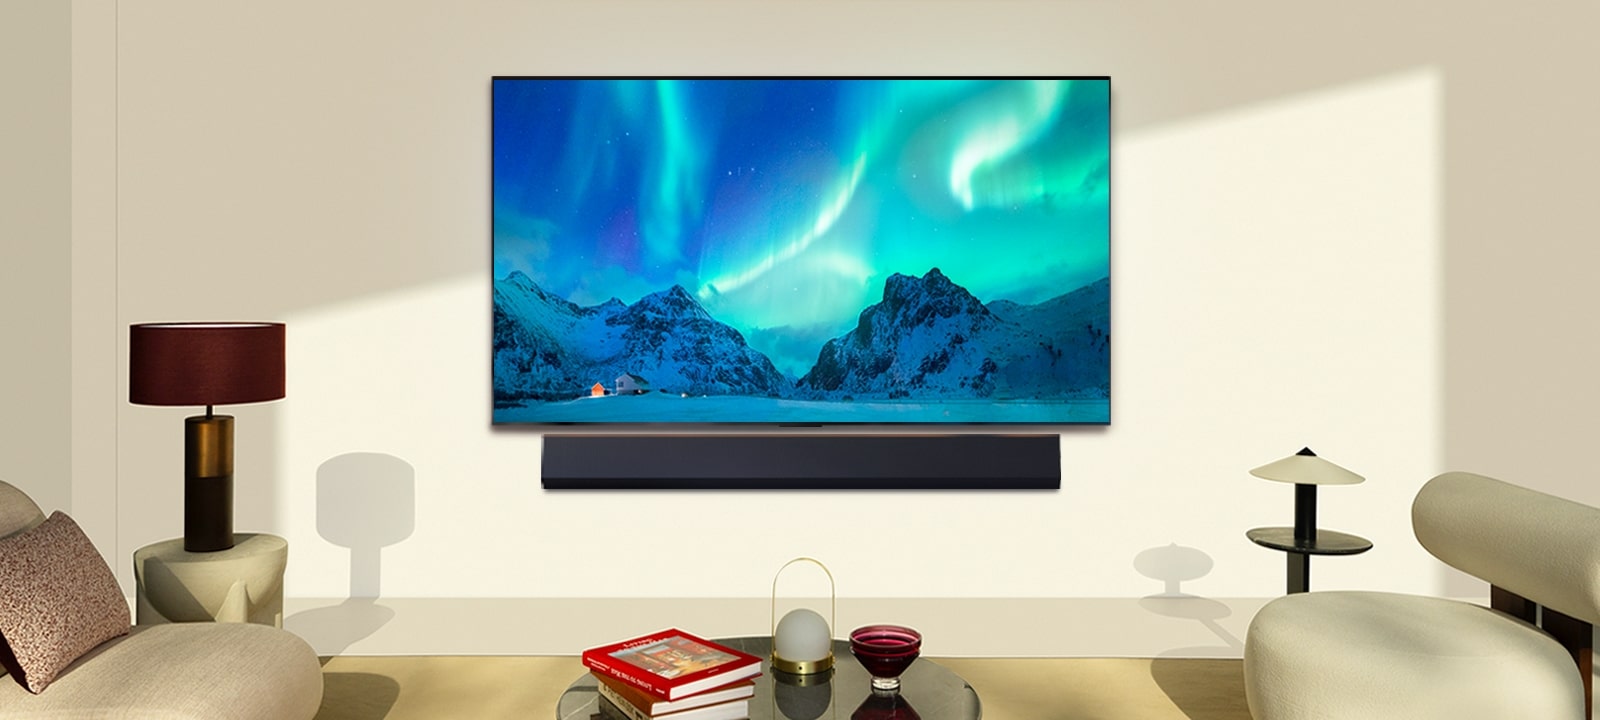 LG OLED TV și bară de sunet într-un spațiu de locuit modern în timpul zilei. Imaginea de pe ecran a aurorei boreale este afișată cu nivelurile ideale de luminozitate.